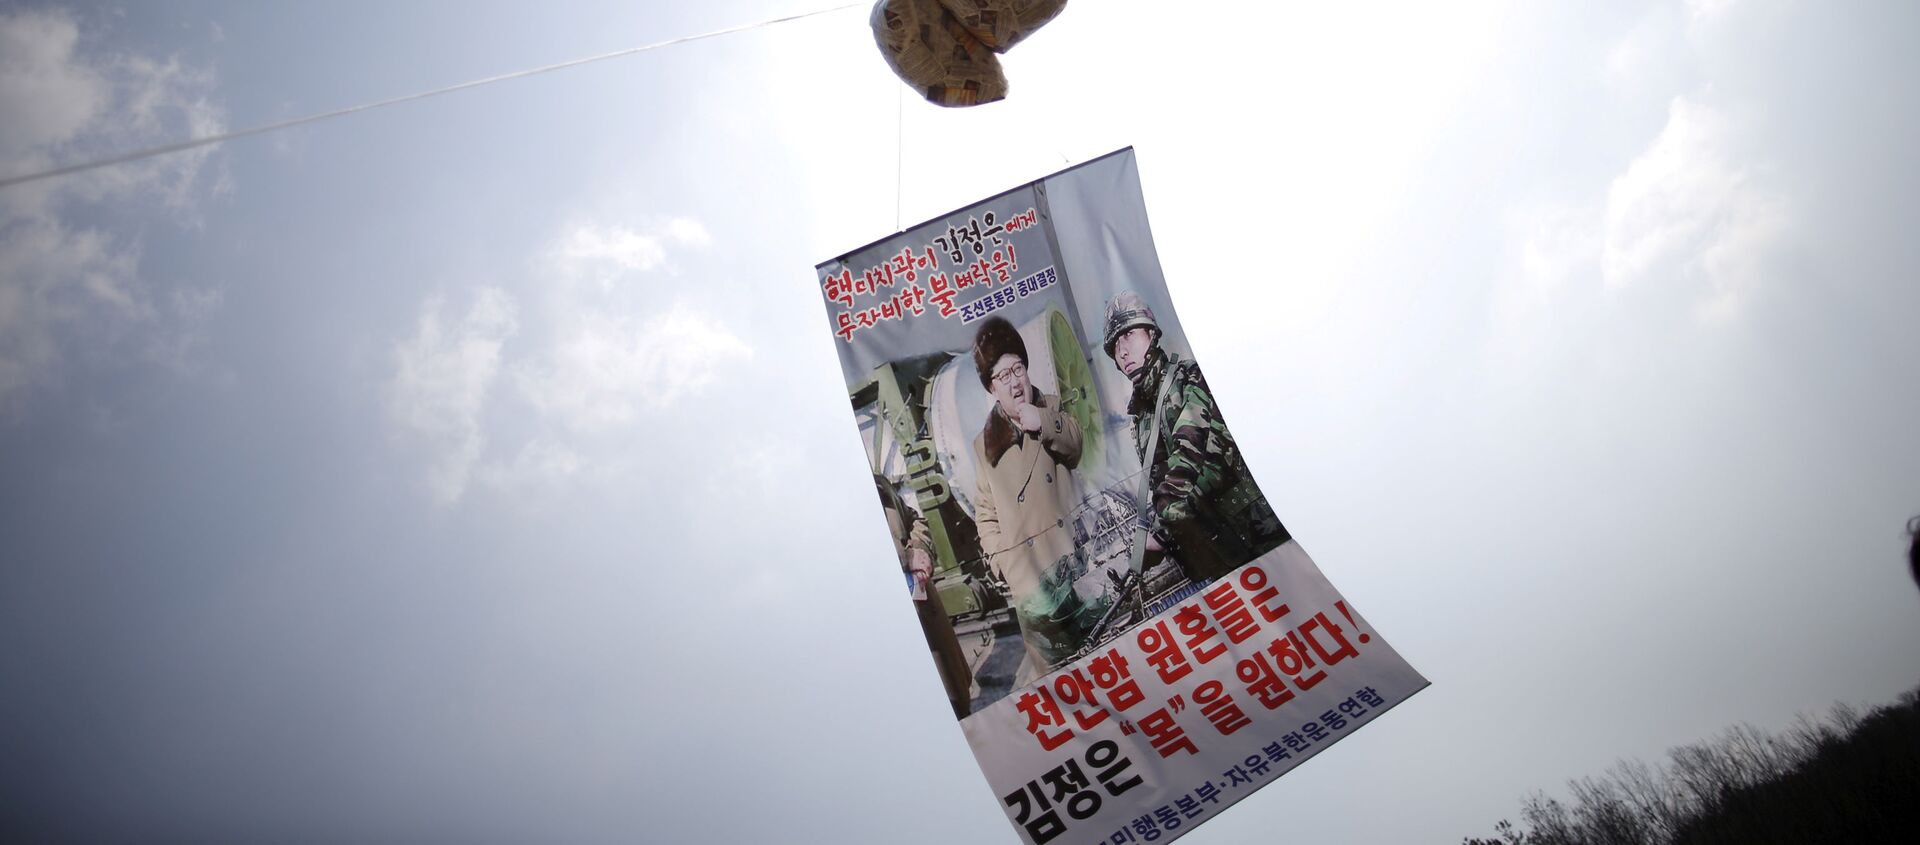 Un globo con folletos denunciando al líder norcoreano, Kim Jong-un, flota en el aire cerca de la zona desmilitarizada que separa las dos Coreas - Sputnik Mundo, 1920, 16.12.2020